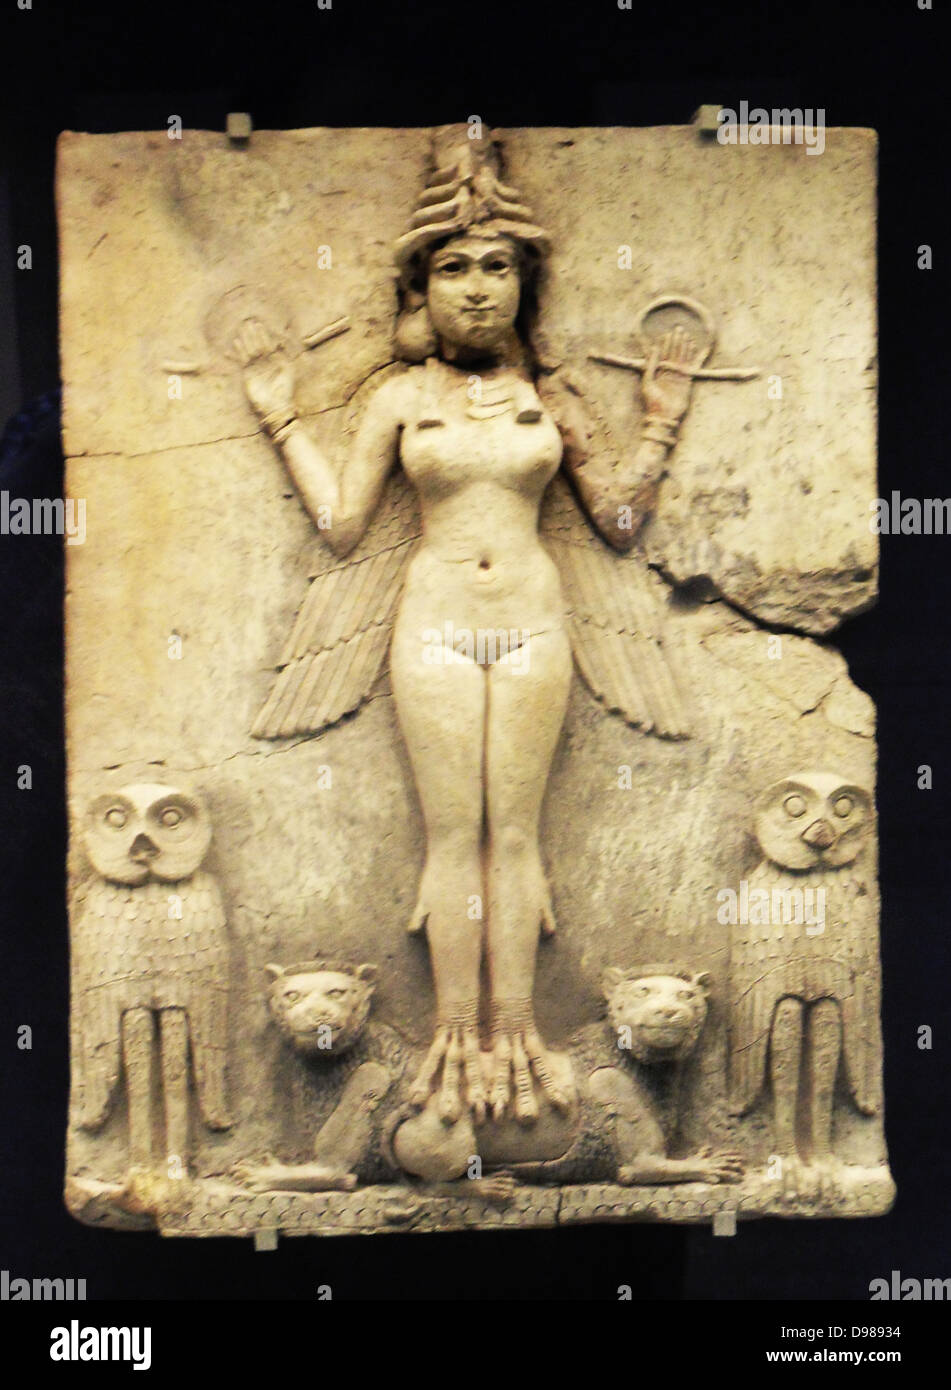 La "Reine de la nuit' relief 'Reconstruction' stockées. Vieux babylonien, 1800-1750 BC. Du sud de l'Iraq. Banque D'Images